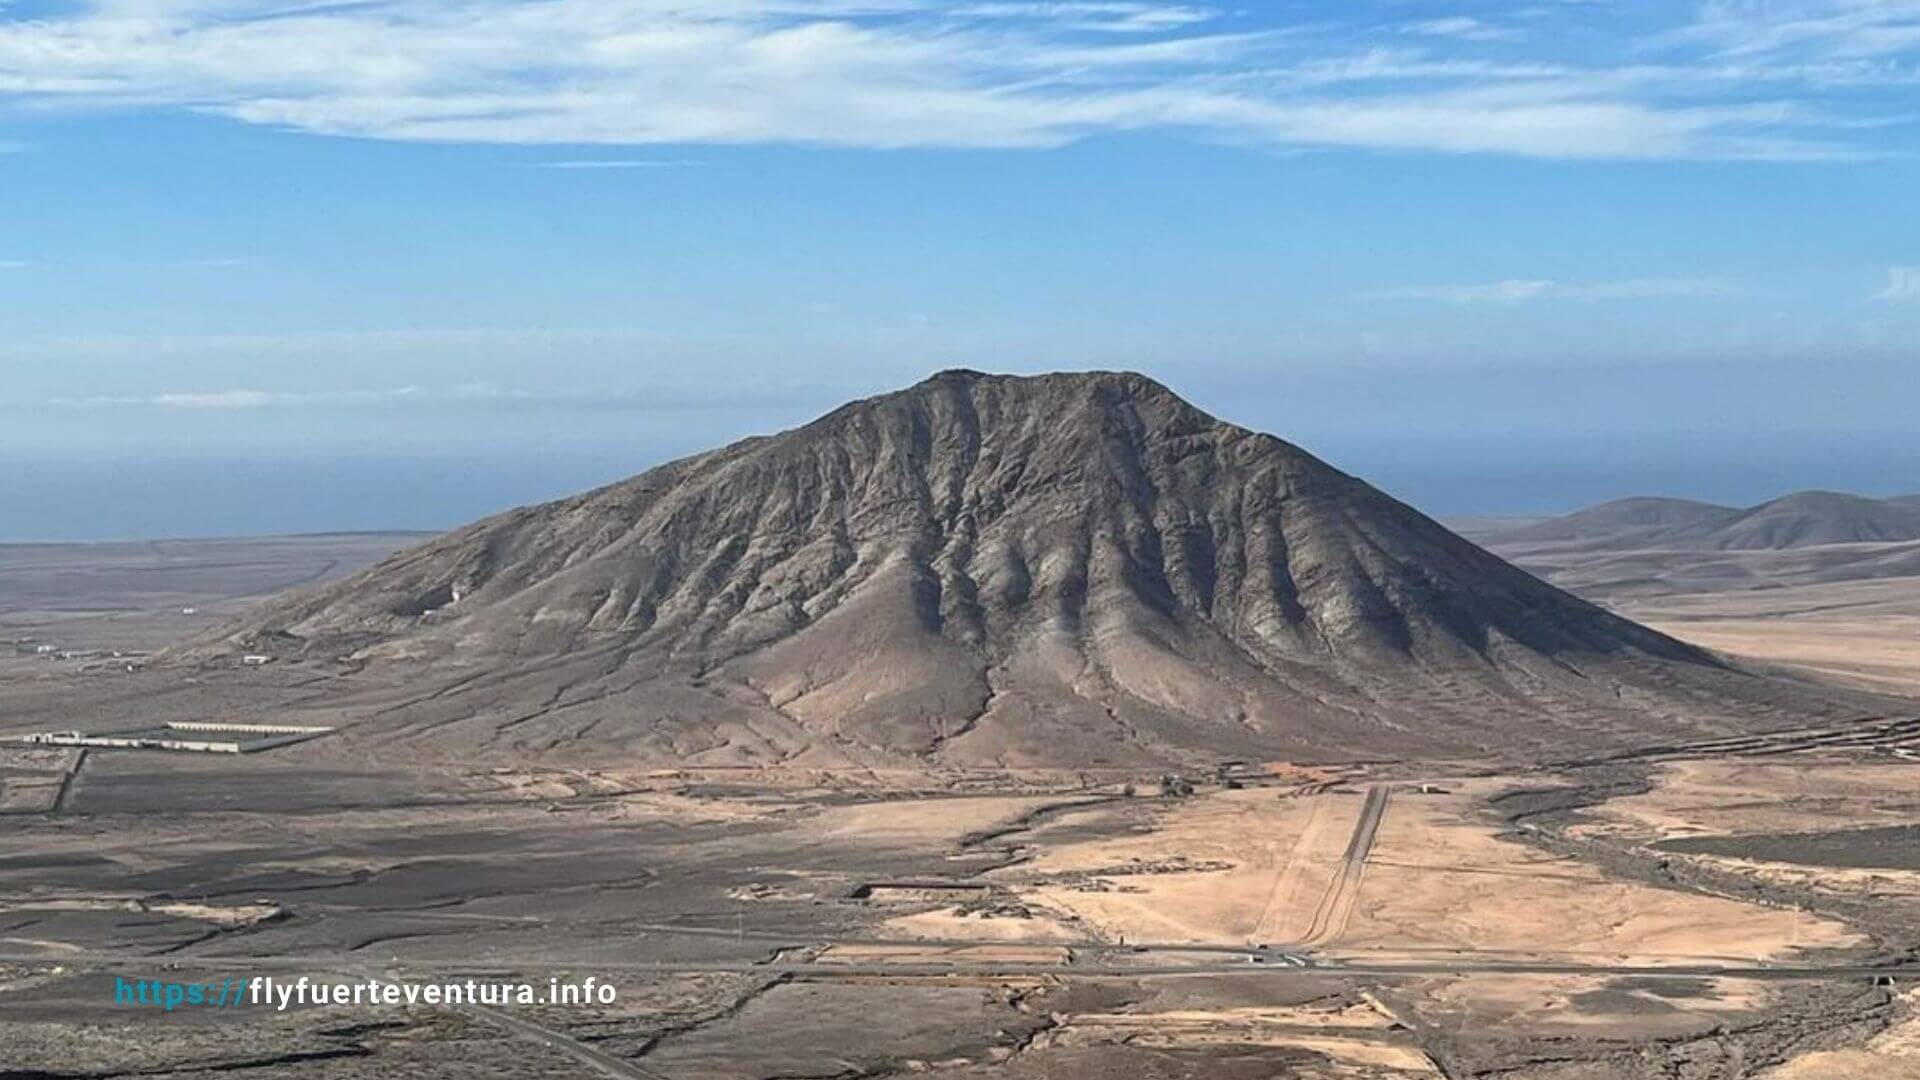 Montaña Sagrada de Tindaya: Un Monumento Natural en Fuerteventura